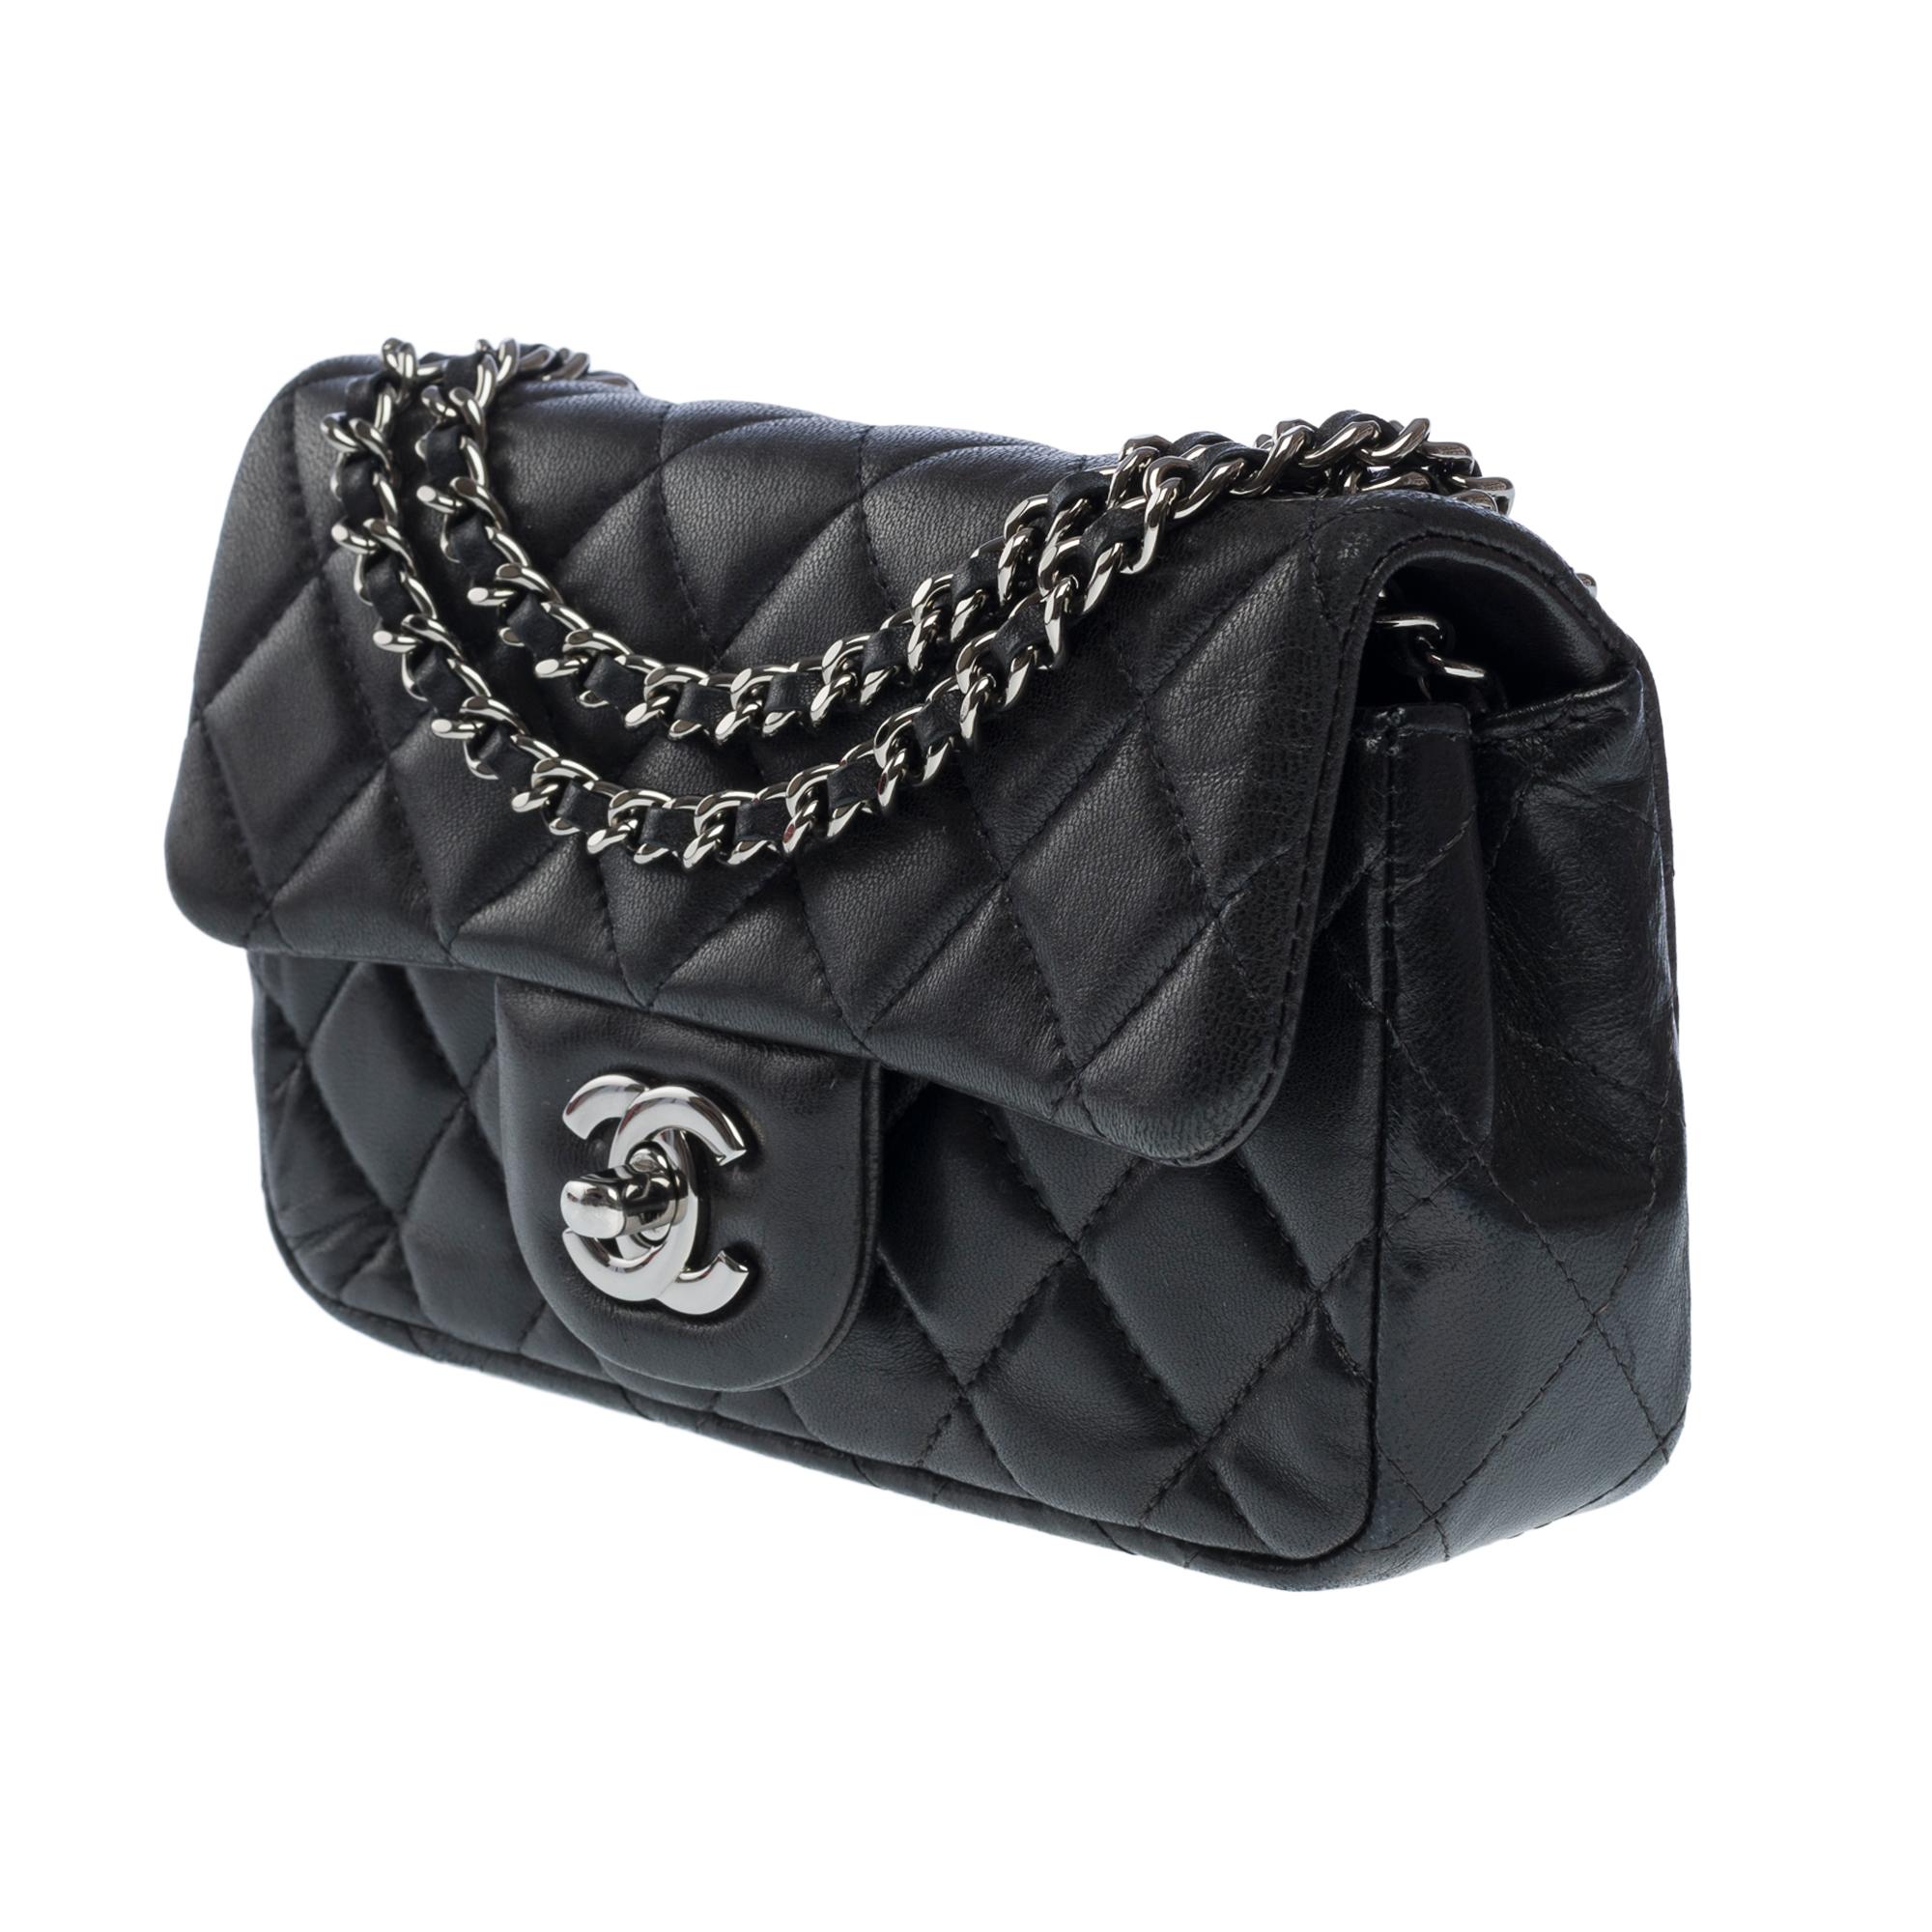 Magnifique sac à bandoulière Timeless de Chanel en agneau matelassé noir, BSHW 1